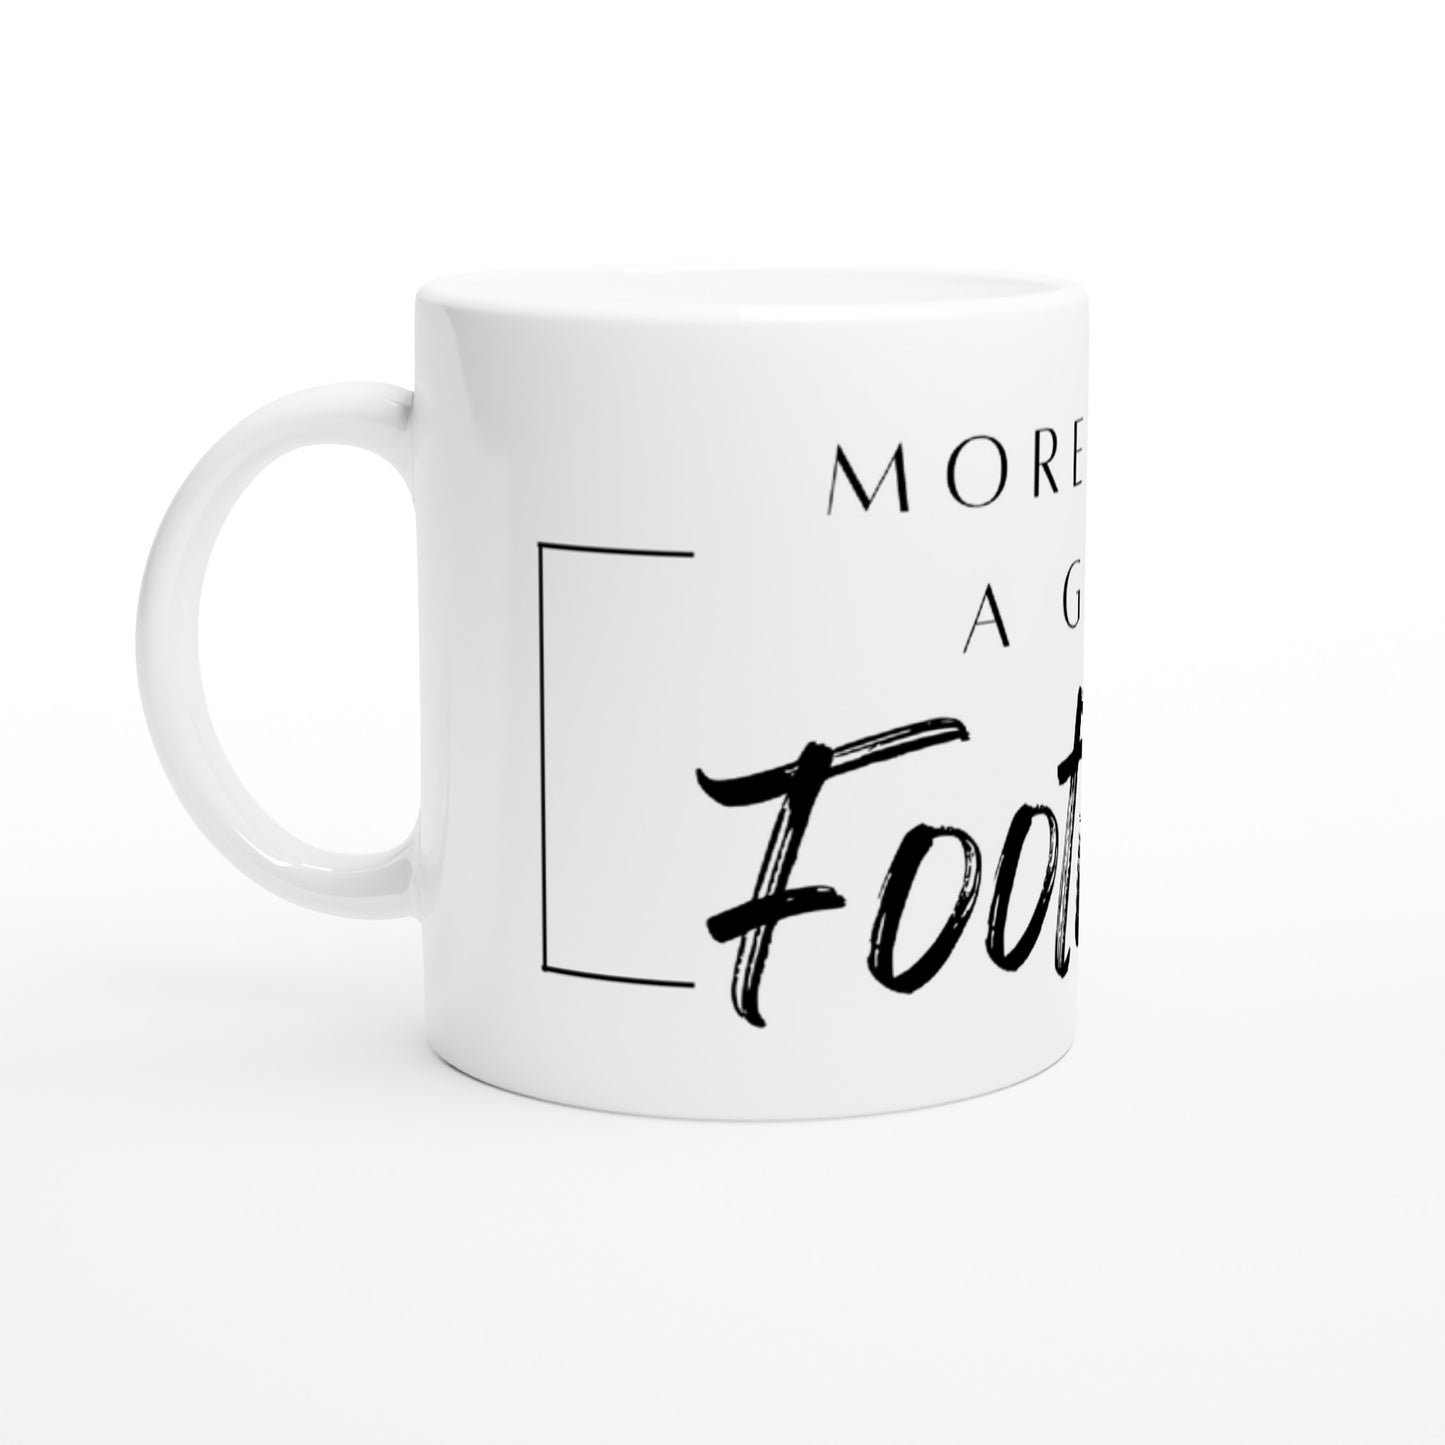 More Than A Game - White 11oz Ceramic Mug